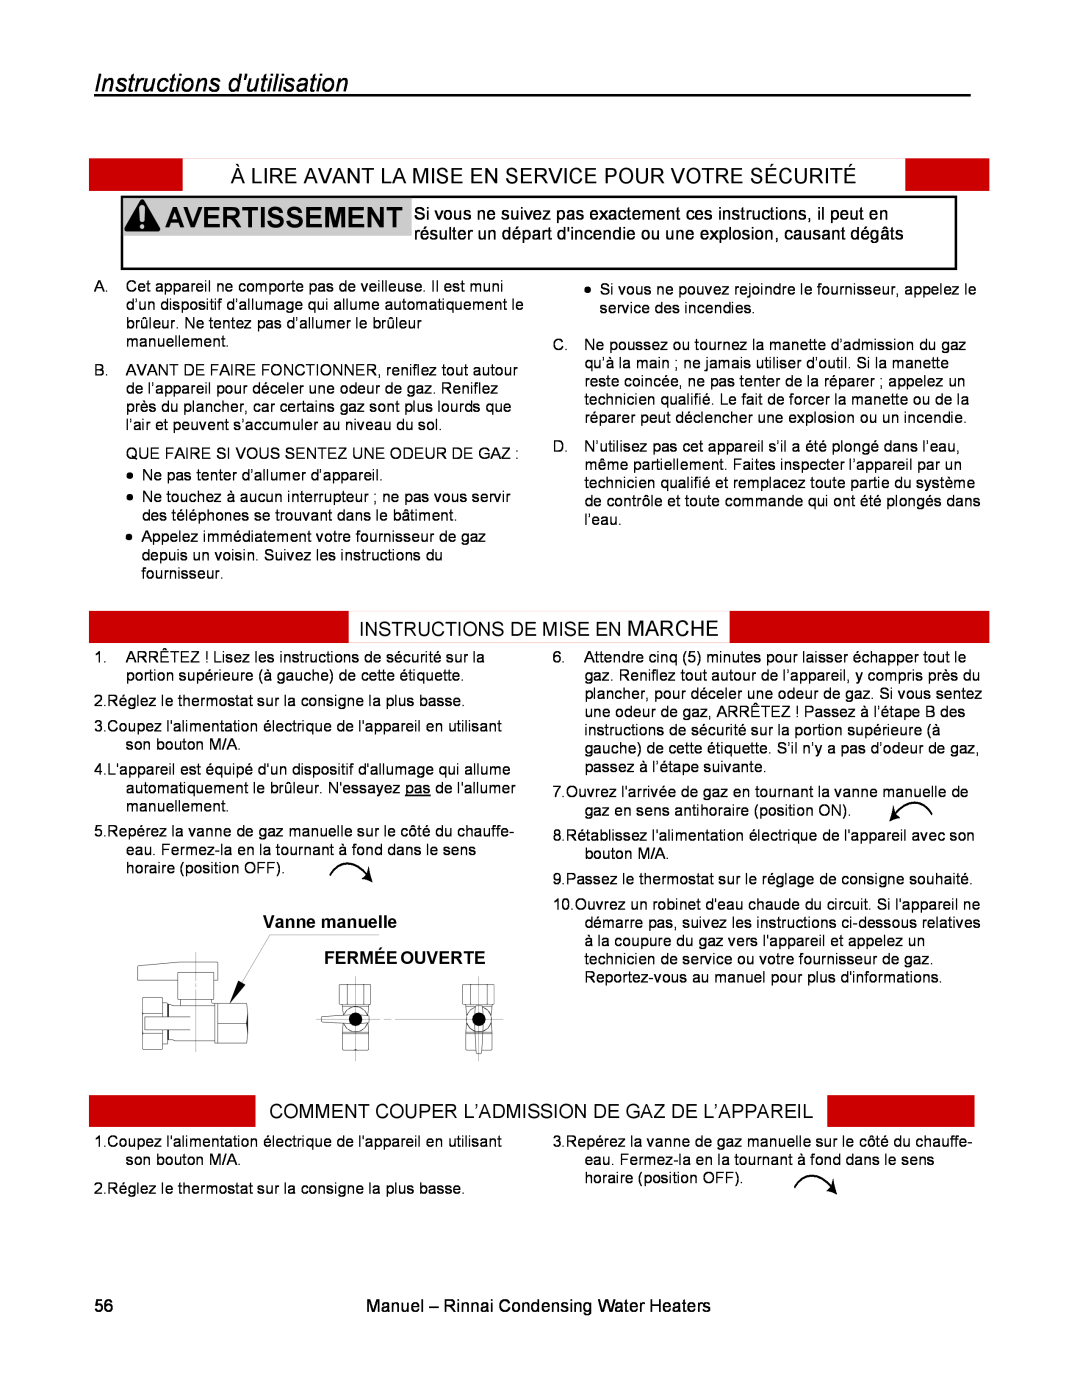 Rinnai RC98HPE Instructions dutilisation, Instructions De Mise En Marche, Comment Couper L’Admission De Gaz De L’Appareil 